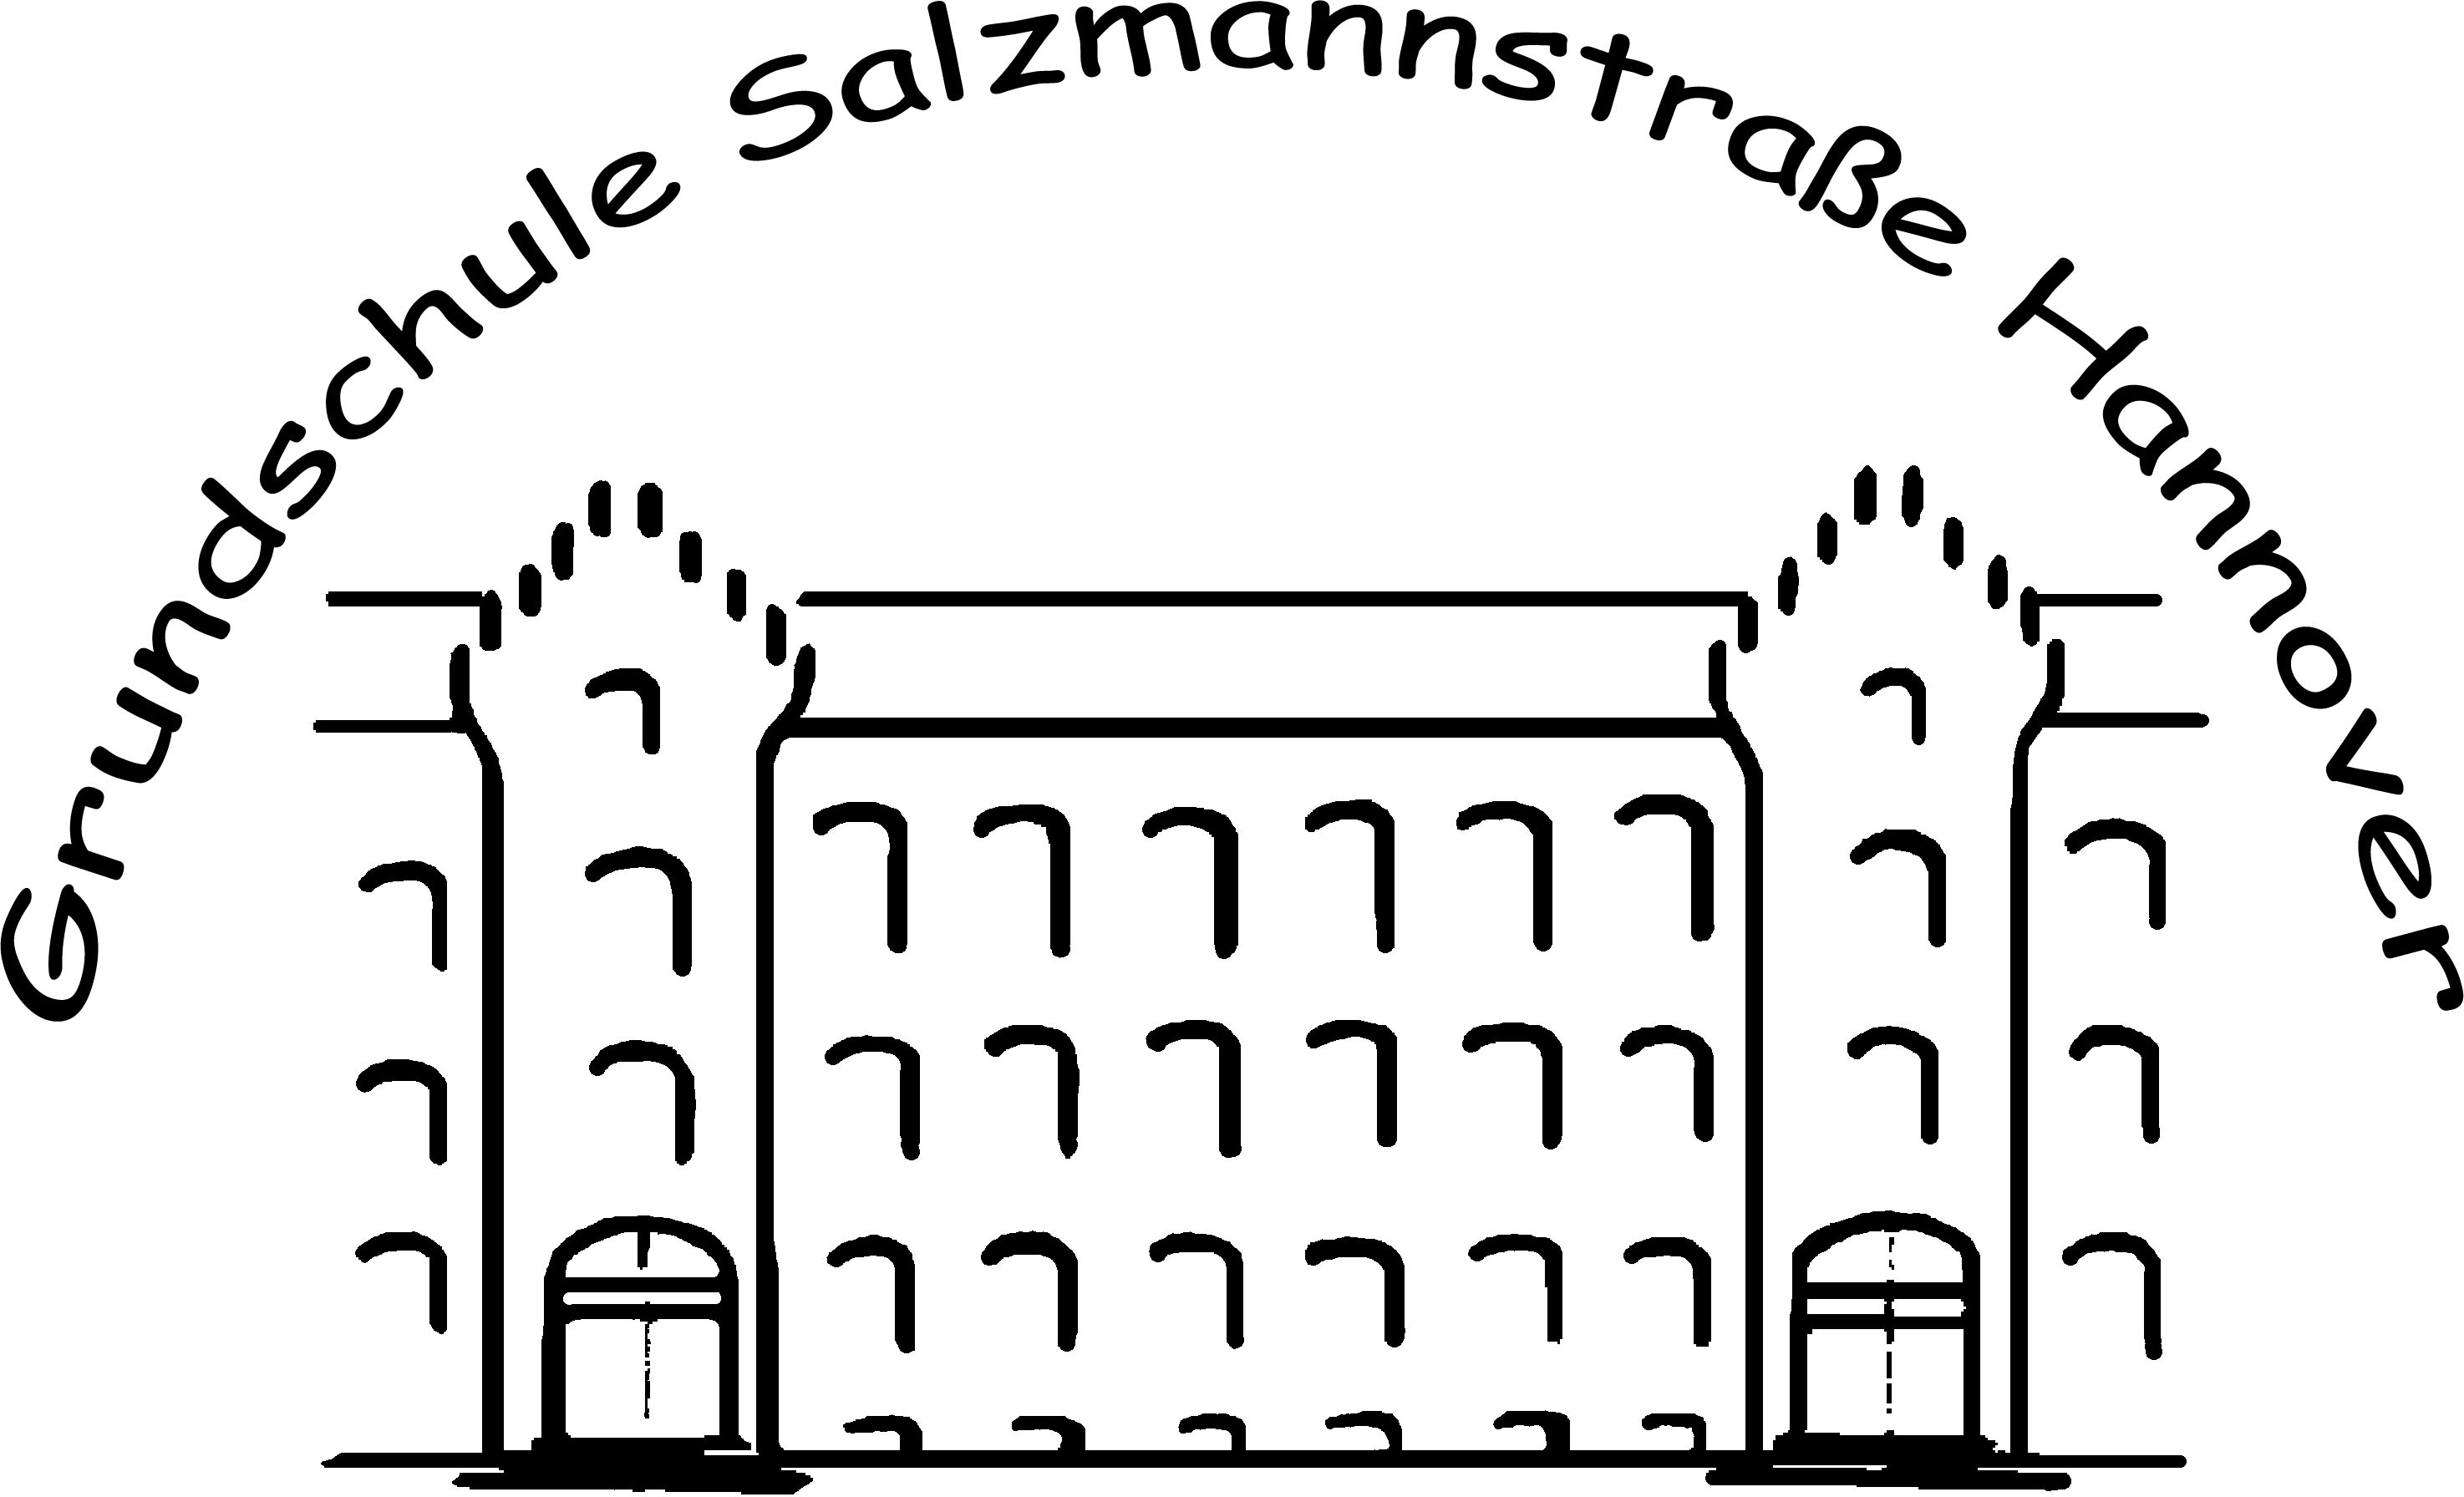 Grundschule Salzmannstrasse